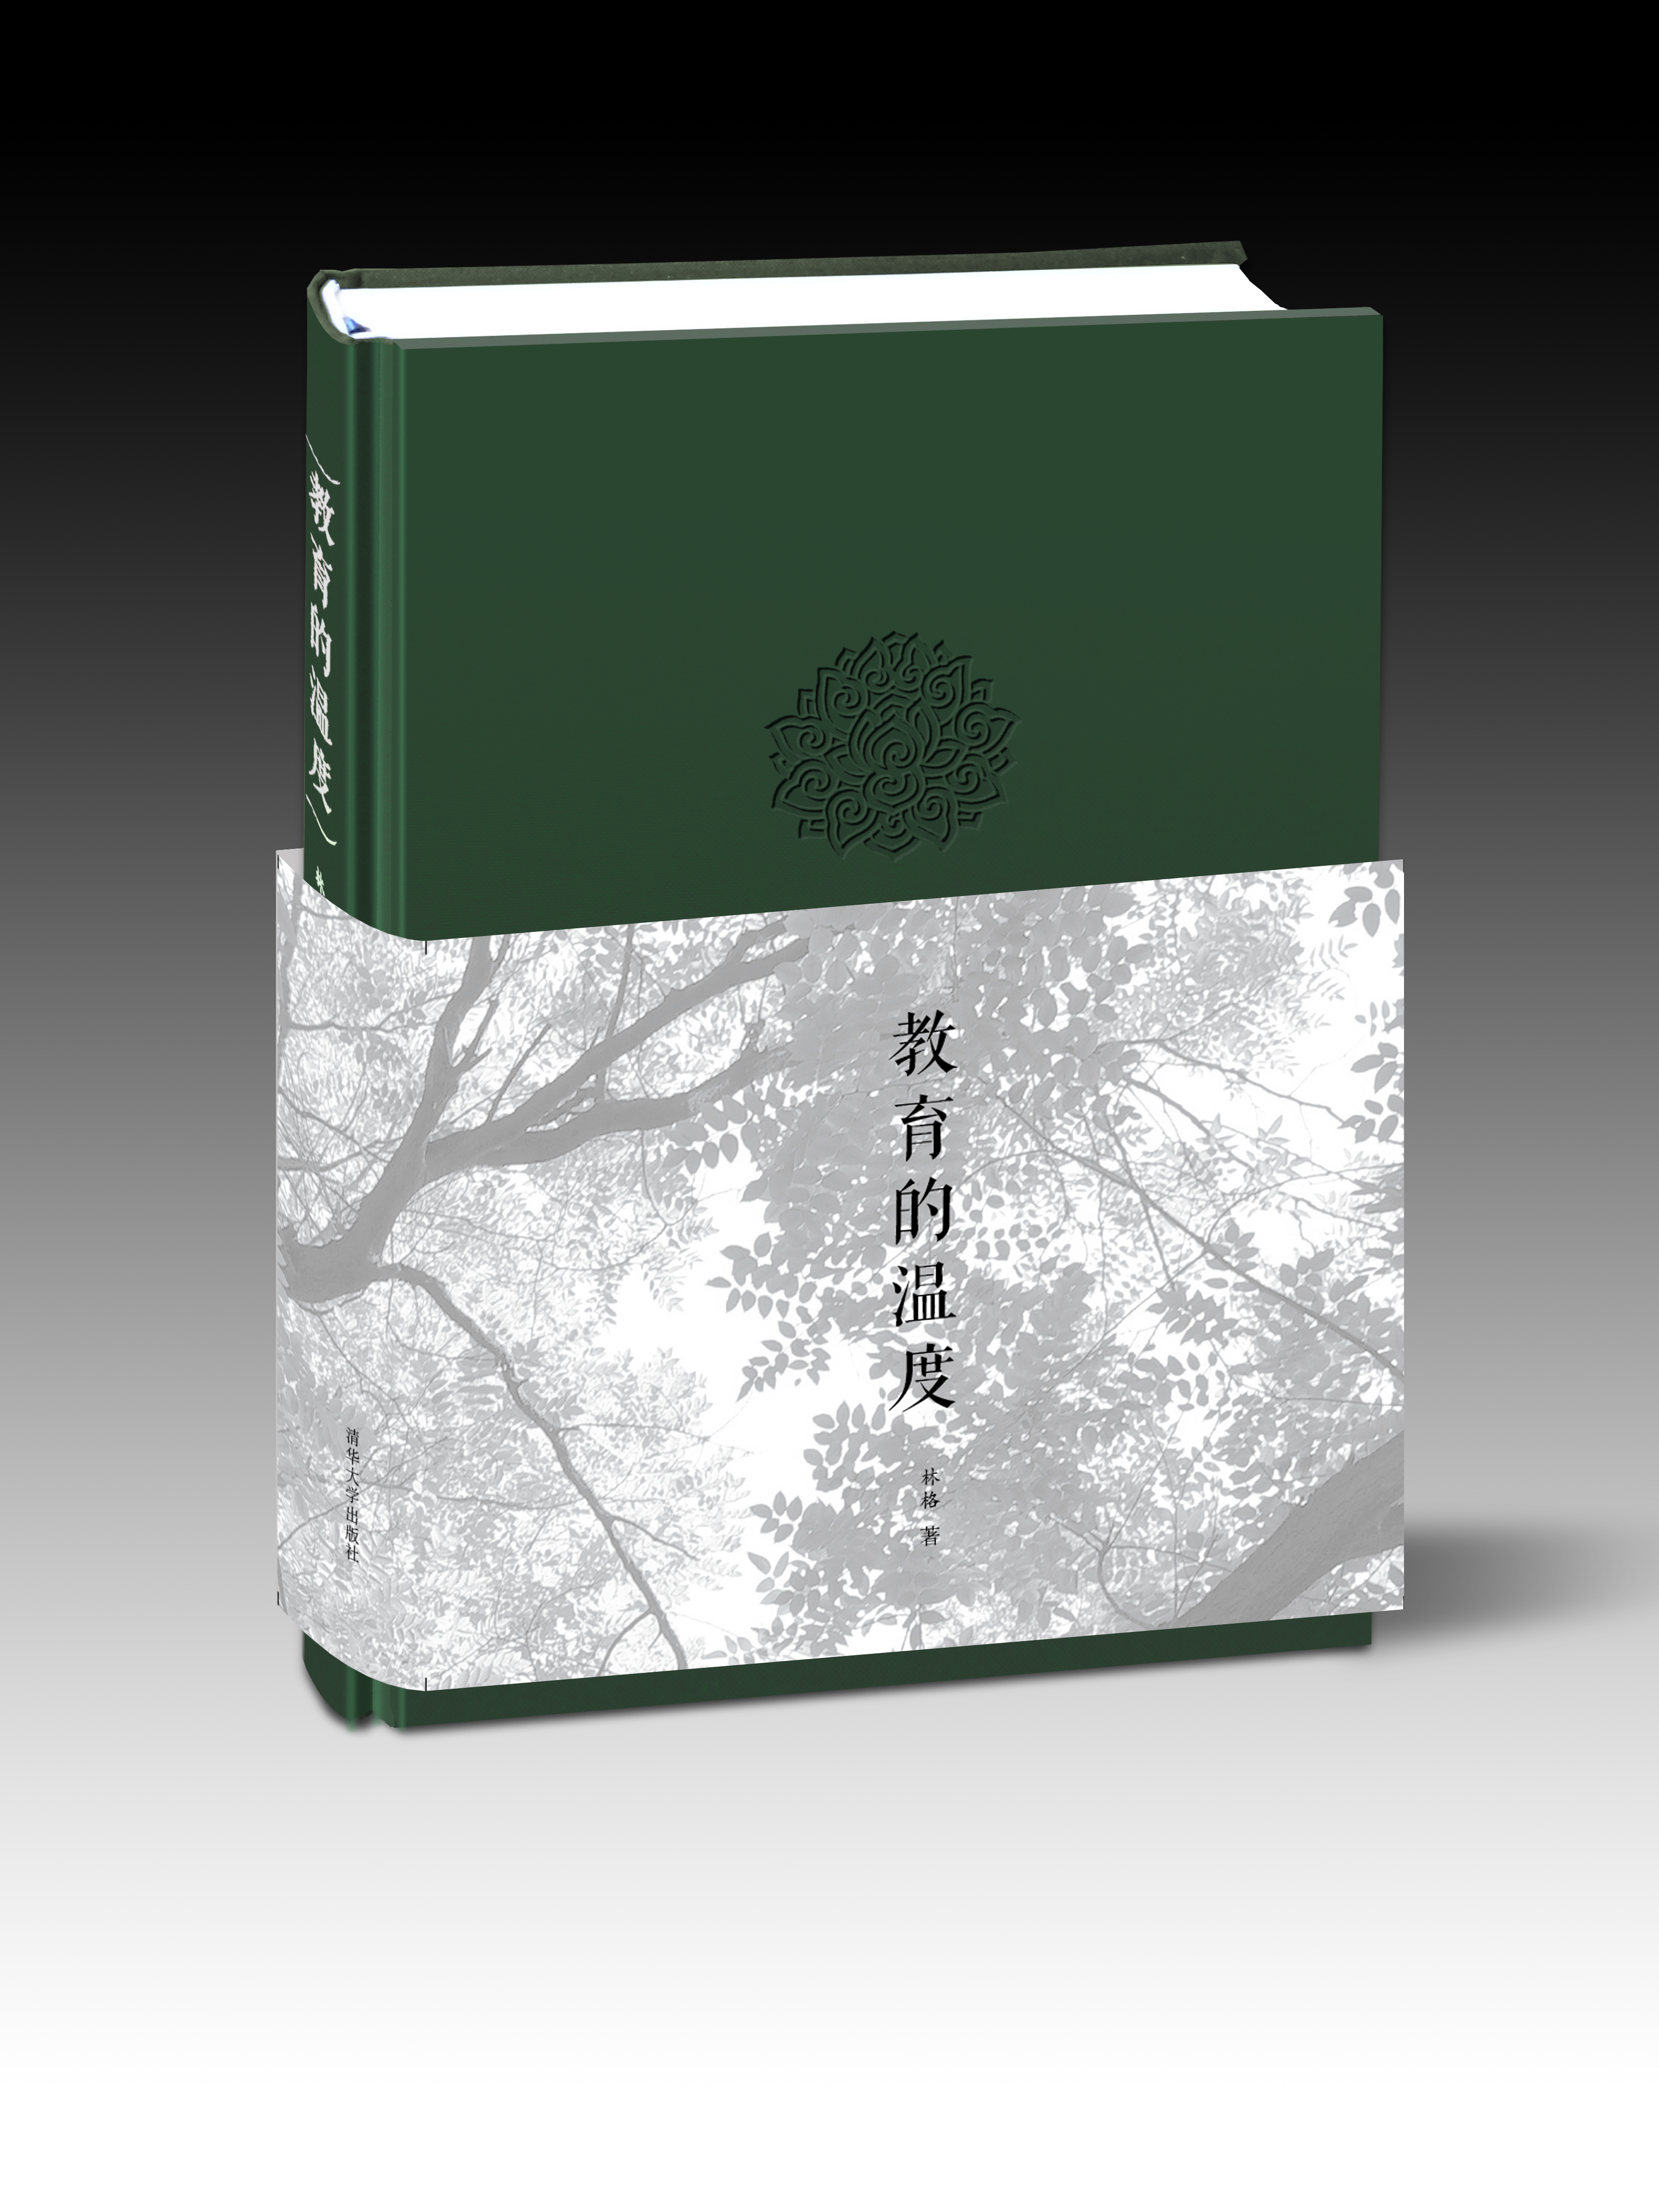 該書限量發行，為林格文字集，清華版